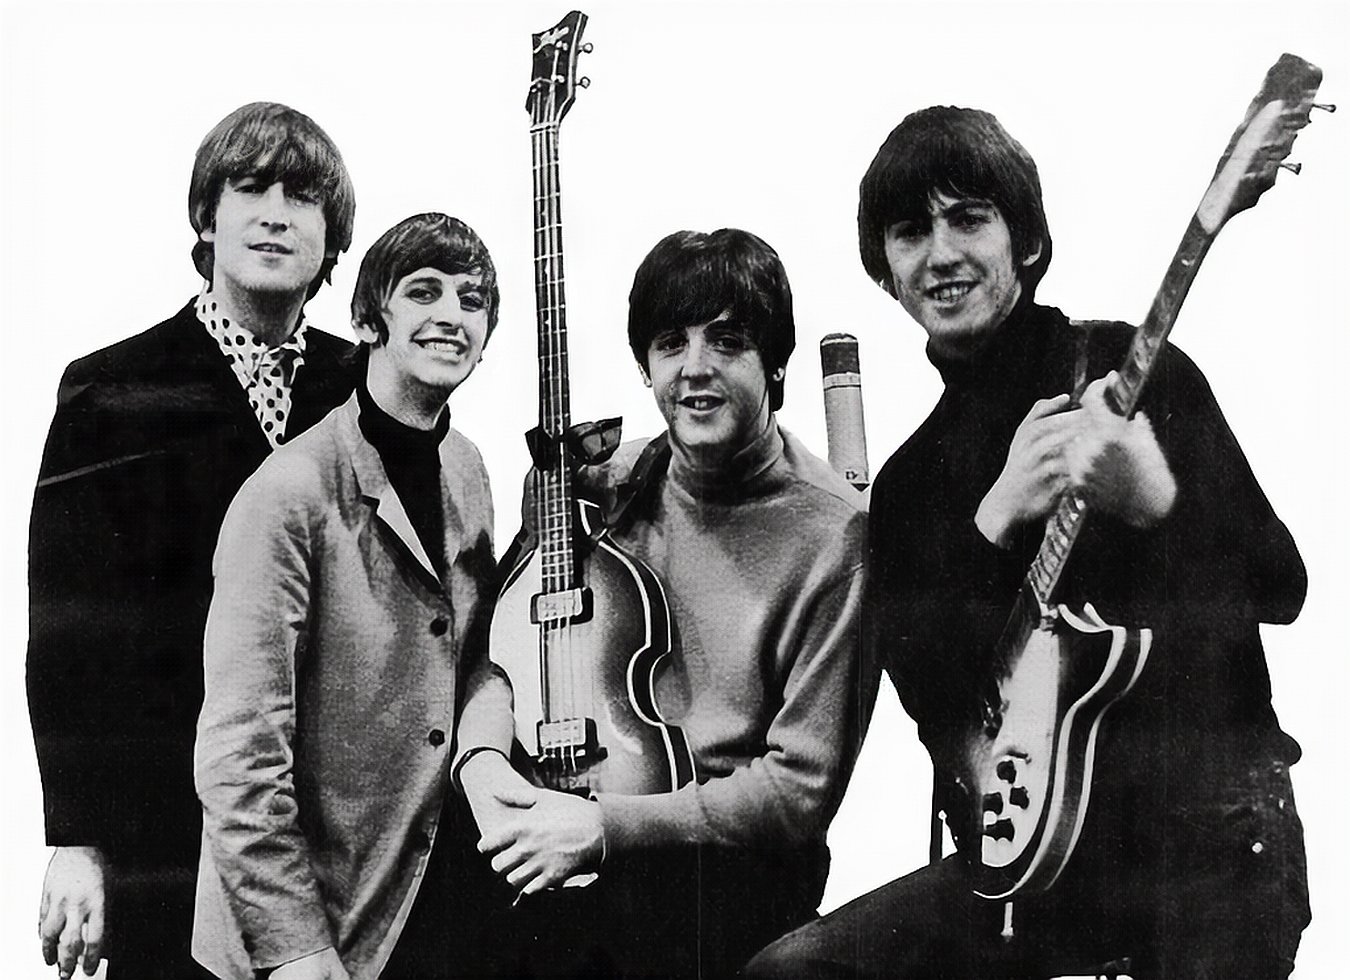 Beatles_ad_1965_just_the_beatles_crop.jpg